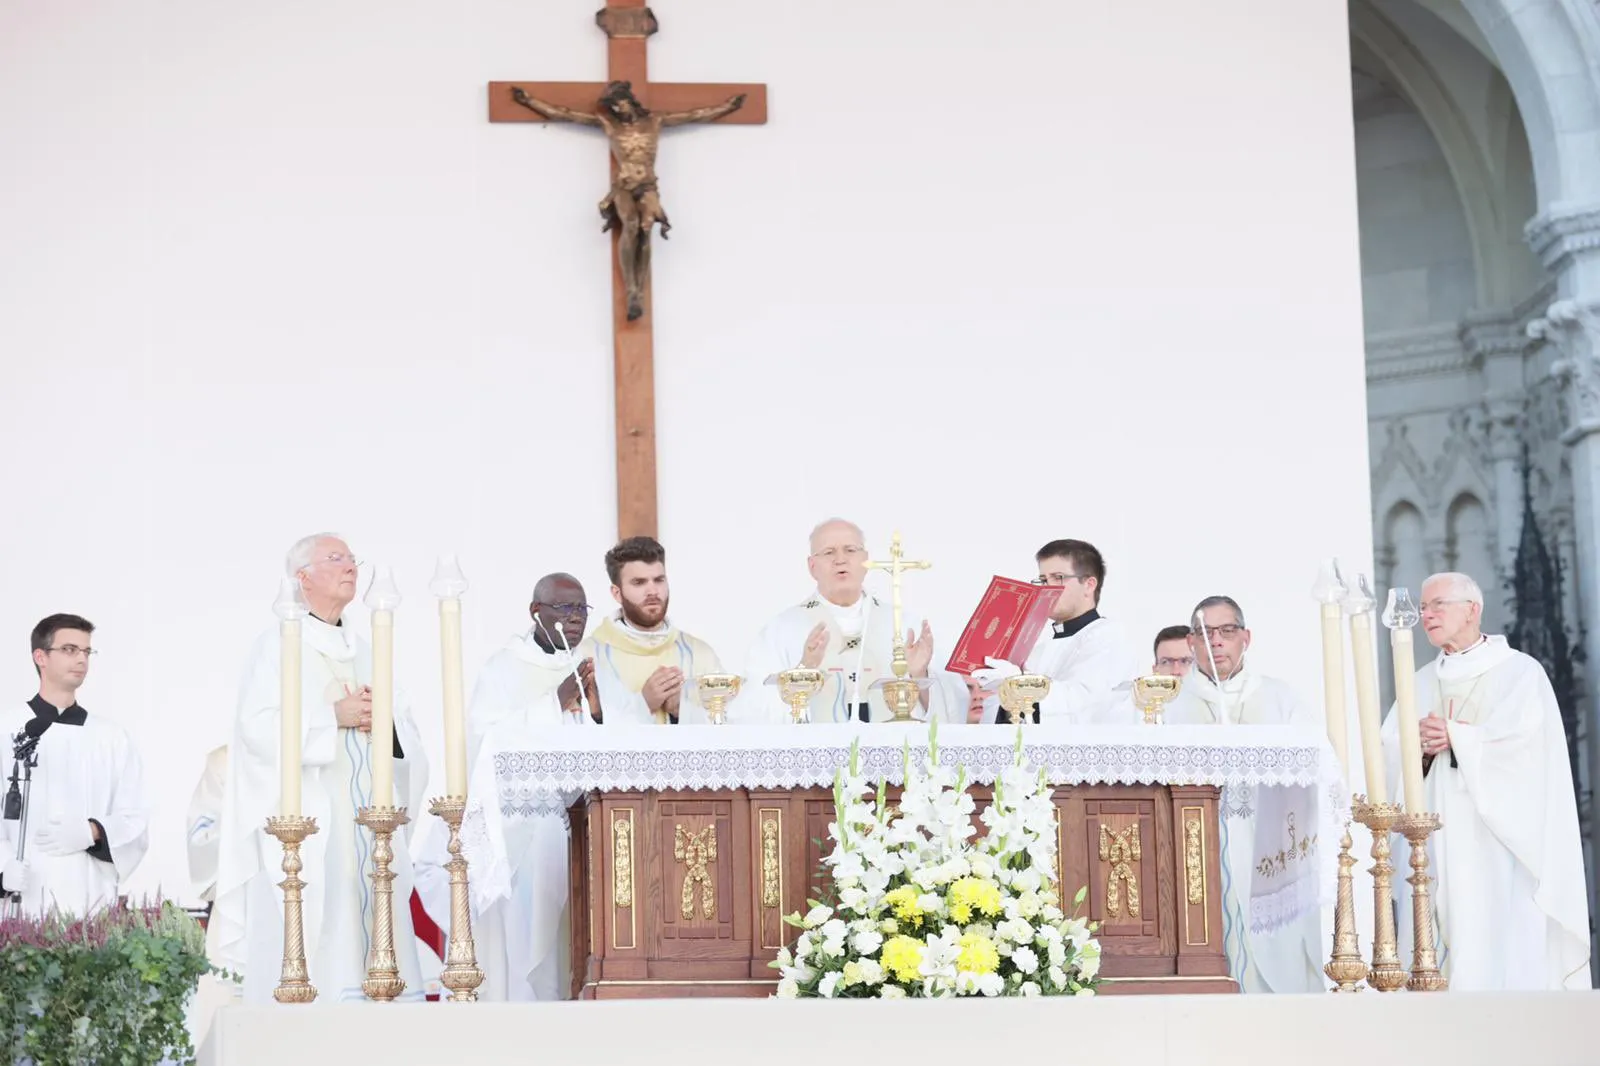 Cardinal Erdo offers Mass at the International Eucharistic Congress. EWTN